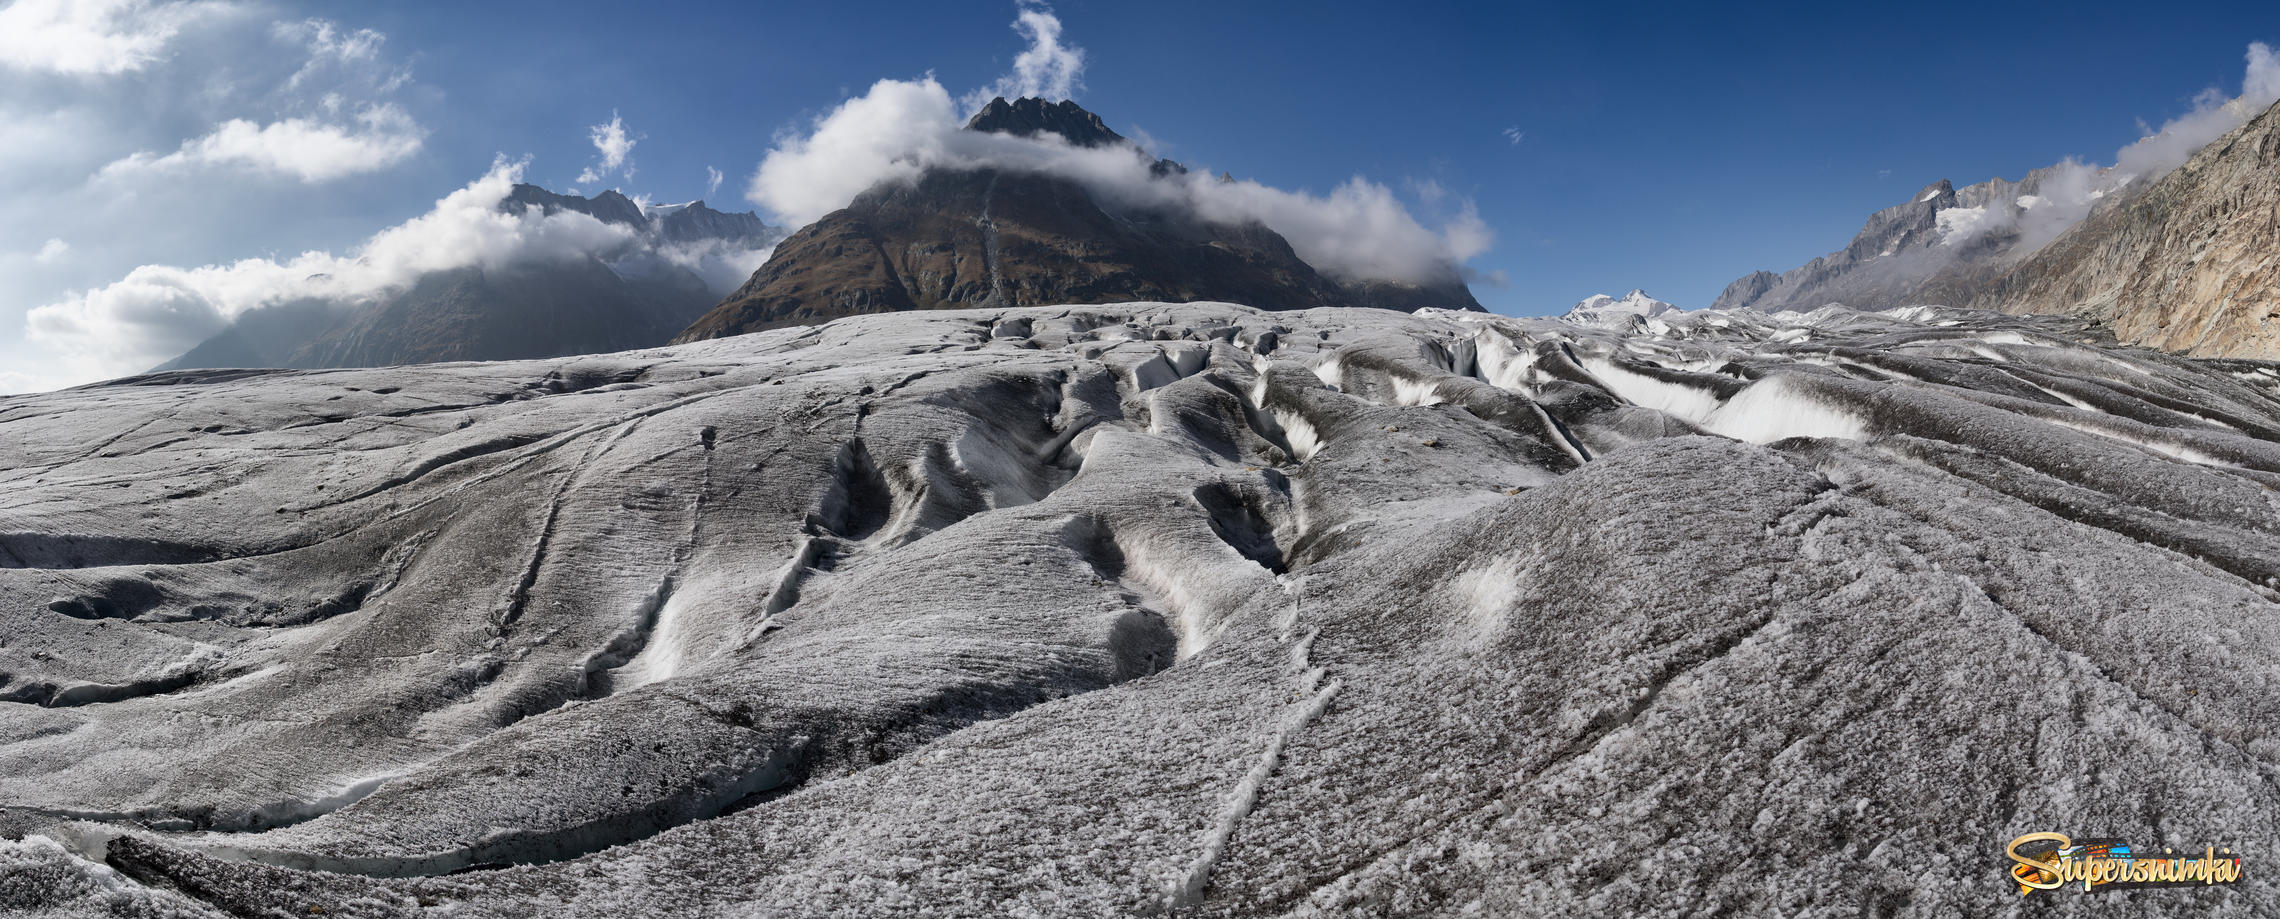 Алеч - крупнейший альпийский ледник